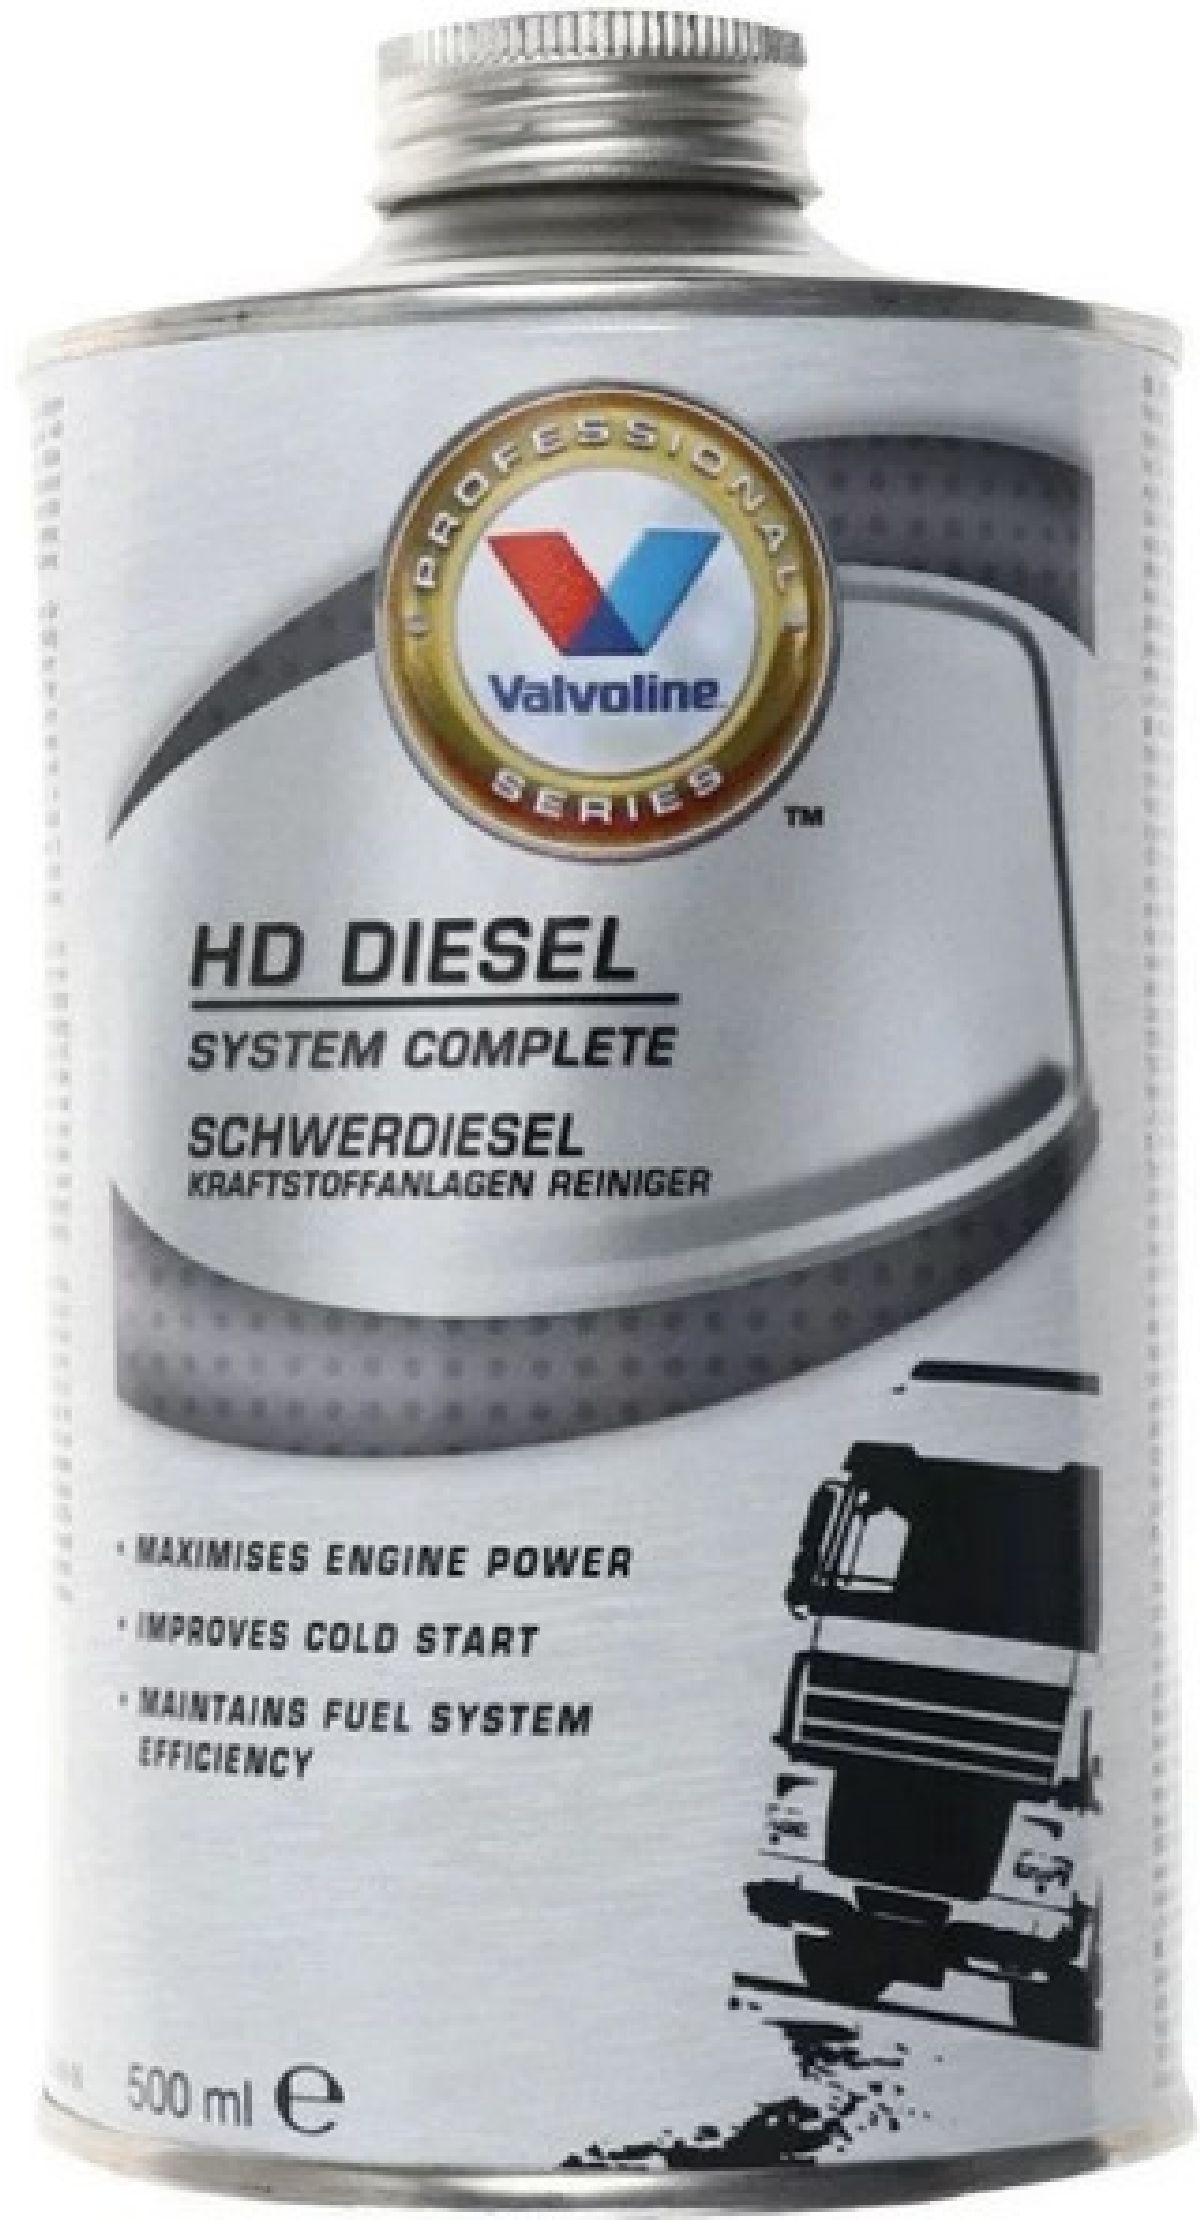 HD Diesel Additiv System complete